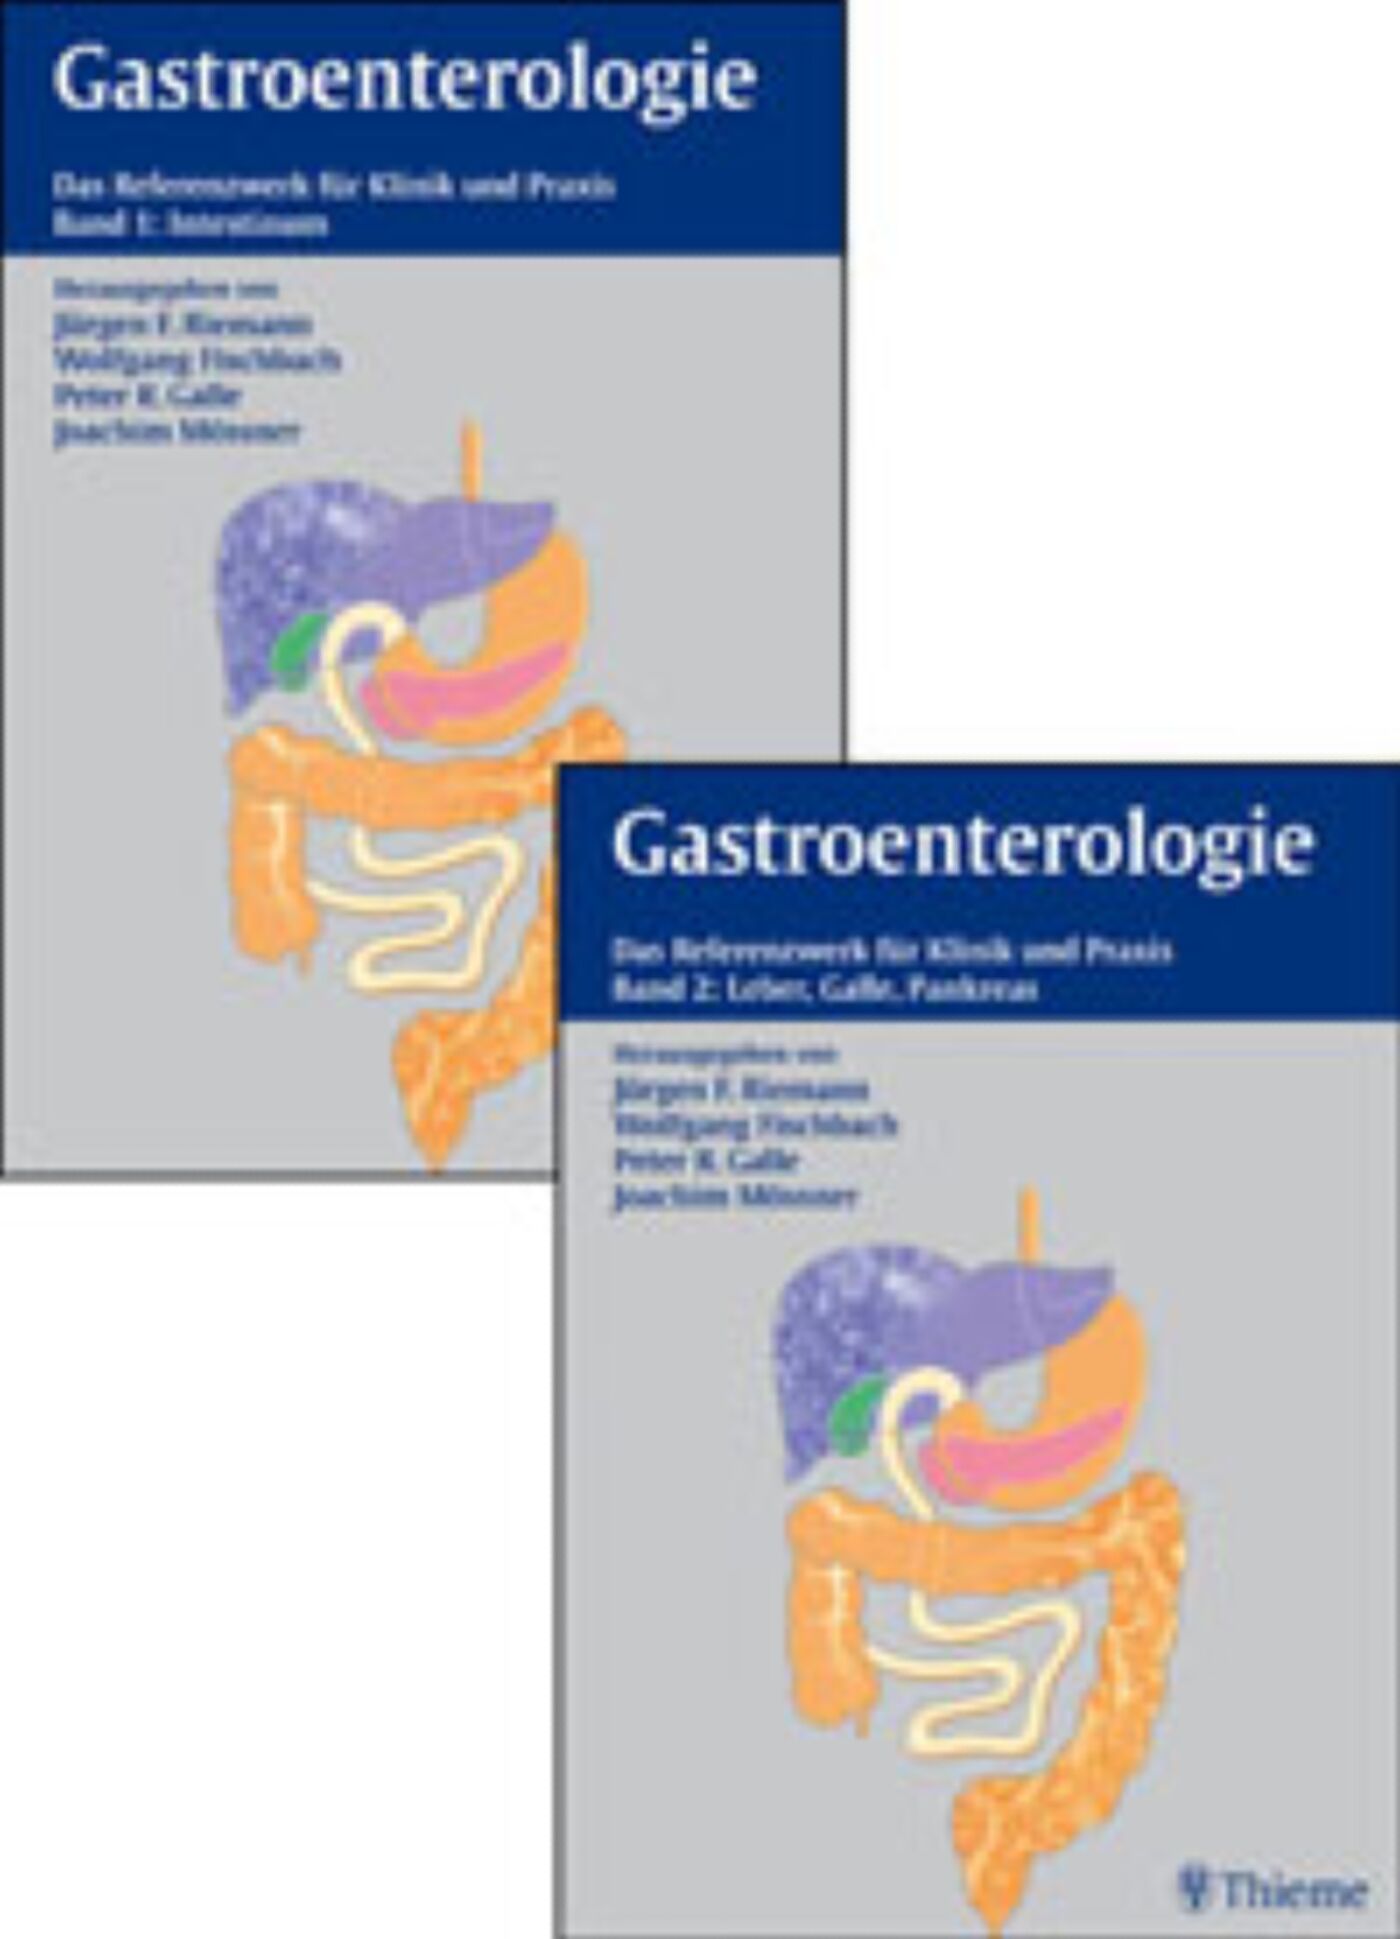 Gastroenterologie in Klinik und Praxis, 9783131583611